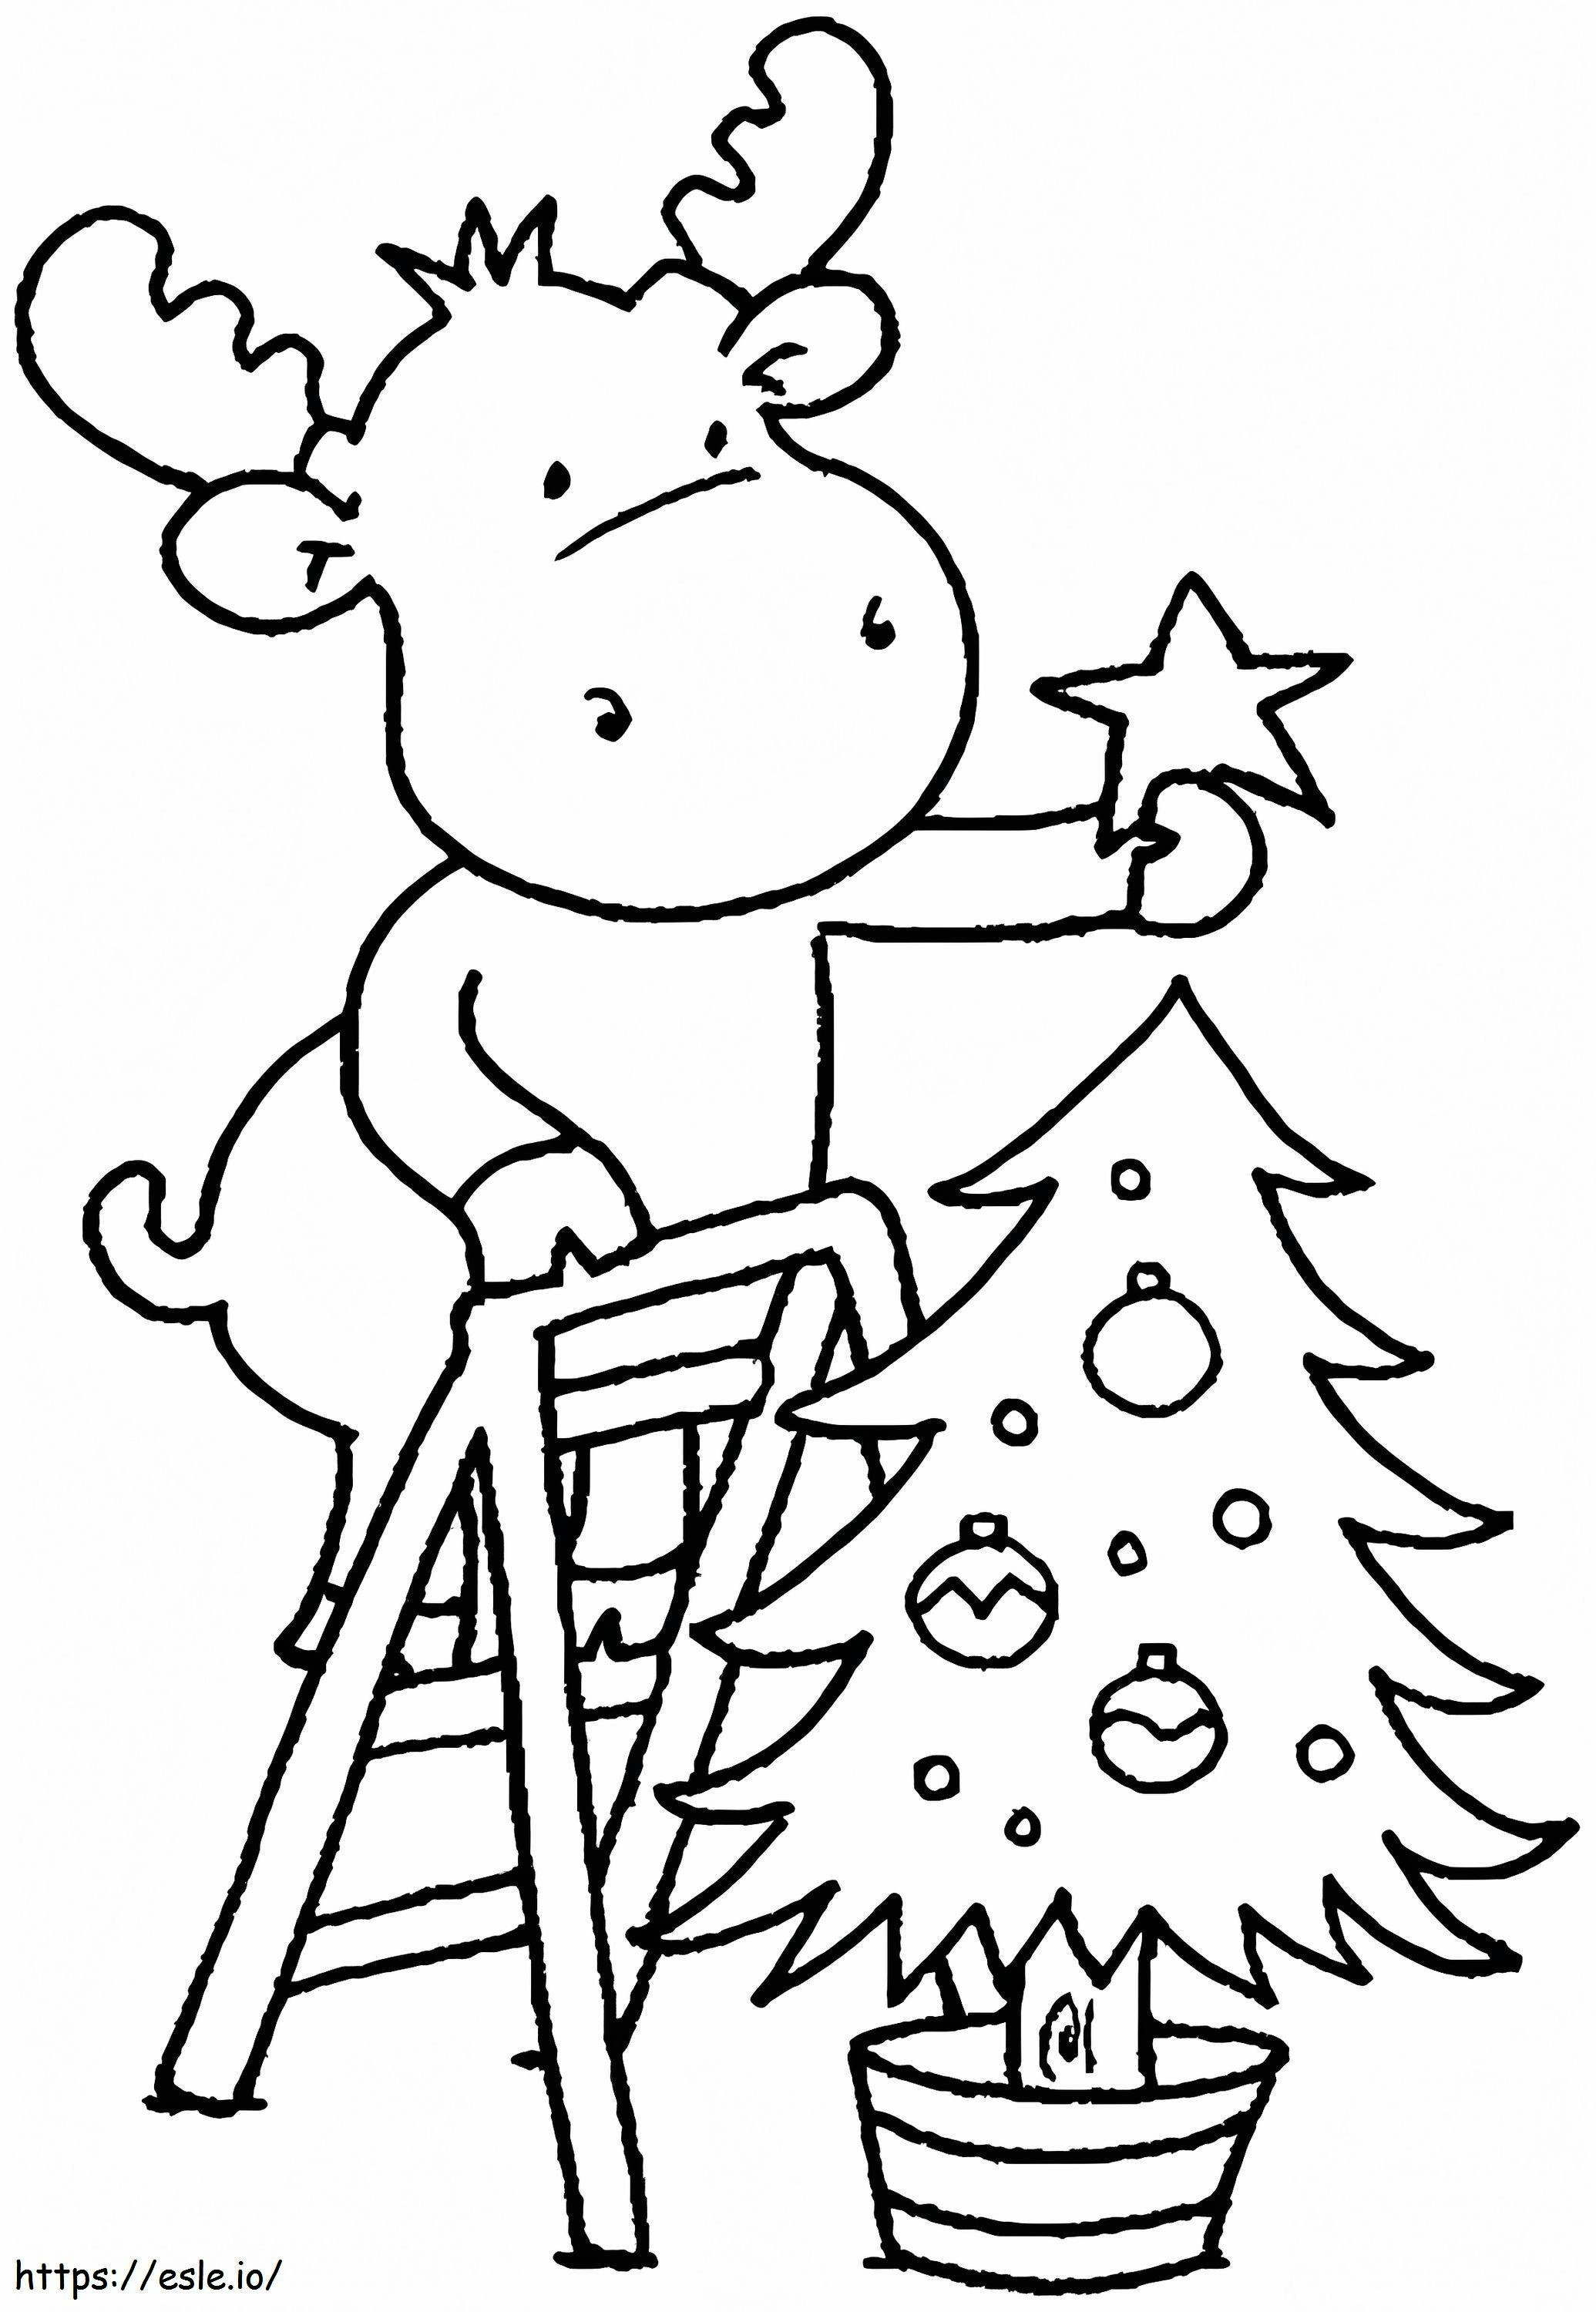 1541725061_Disegni da colorare di Natale per bambini da colorare gratis. Immagini da colorare di Natale per bambini in età prescolare da colorare